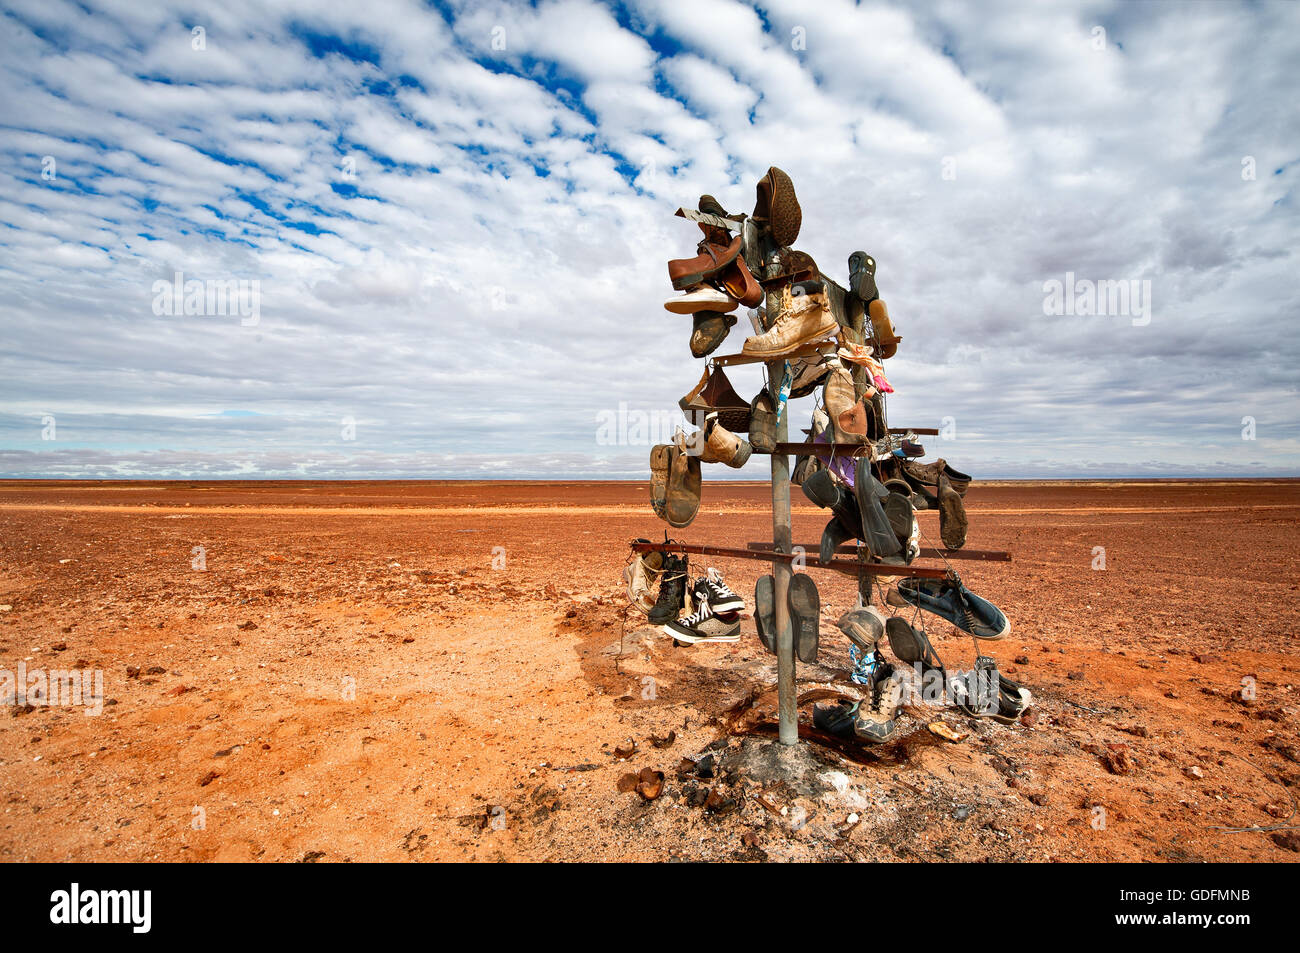 Calzatura divertenti di albero in outback area desertica del Sud Australia. Foto Stock